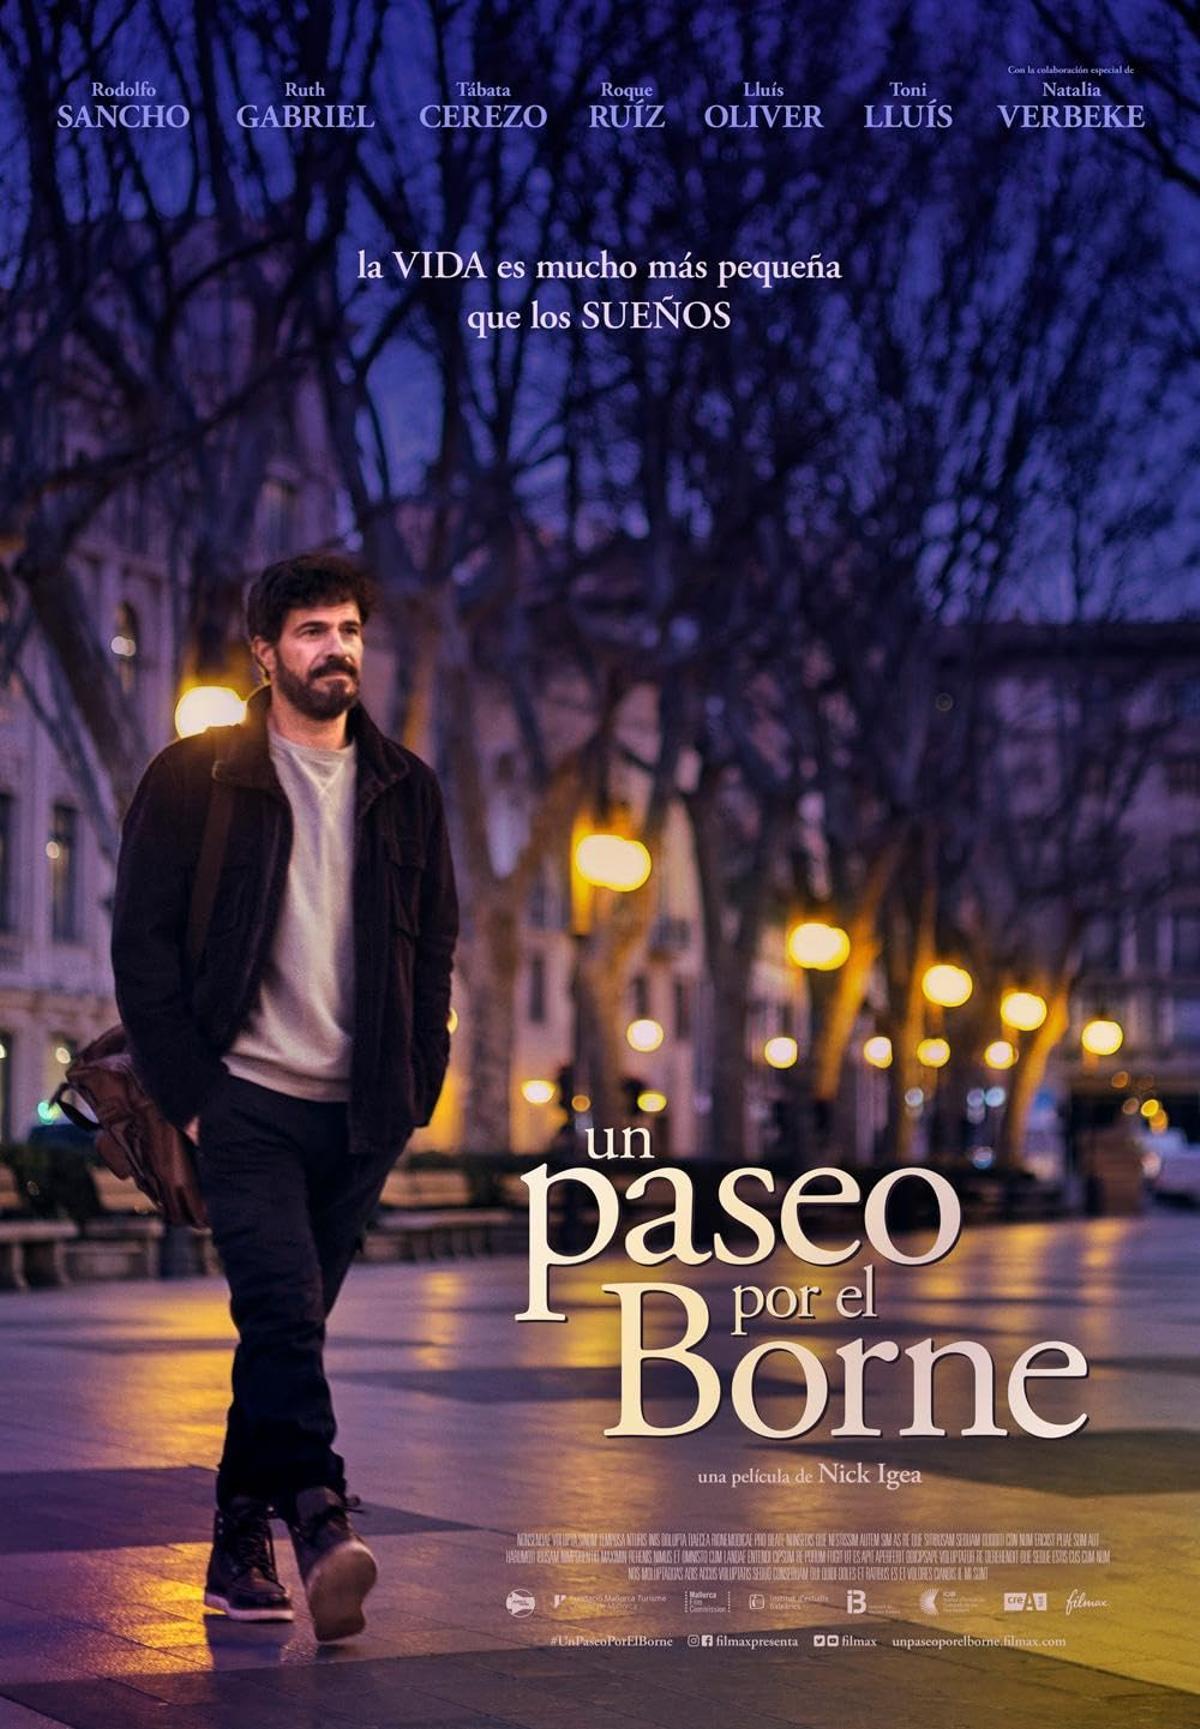 Cartel oficial de la película 'Un paseo por el Borne', con Rodolfo Sancho y dirigida por Nick Igea.